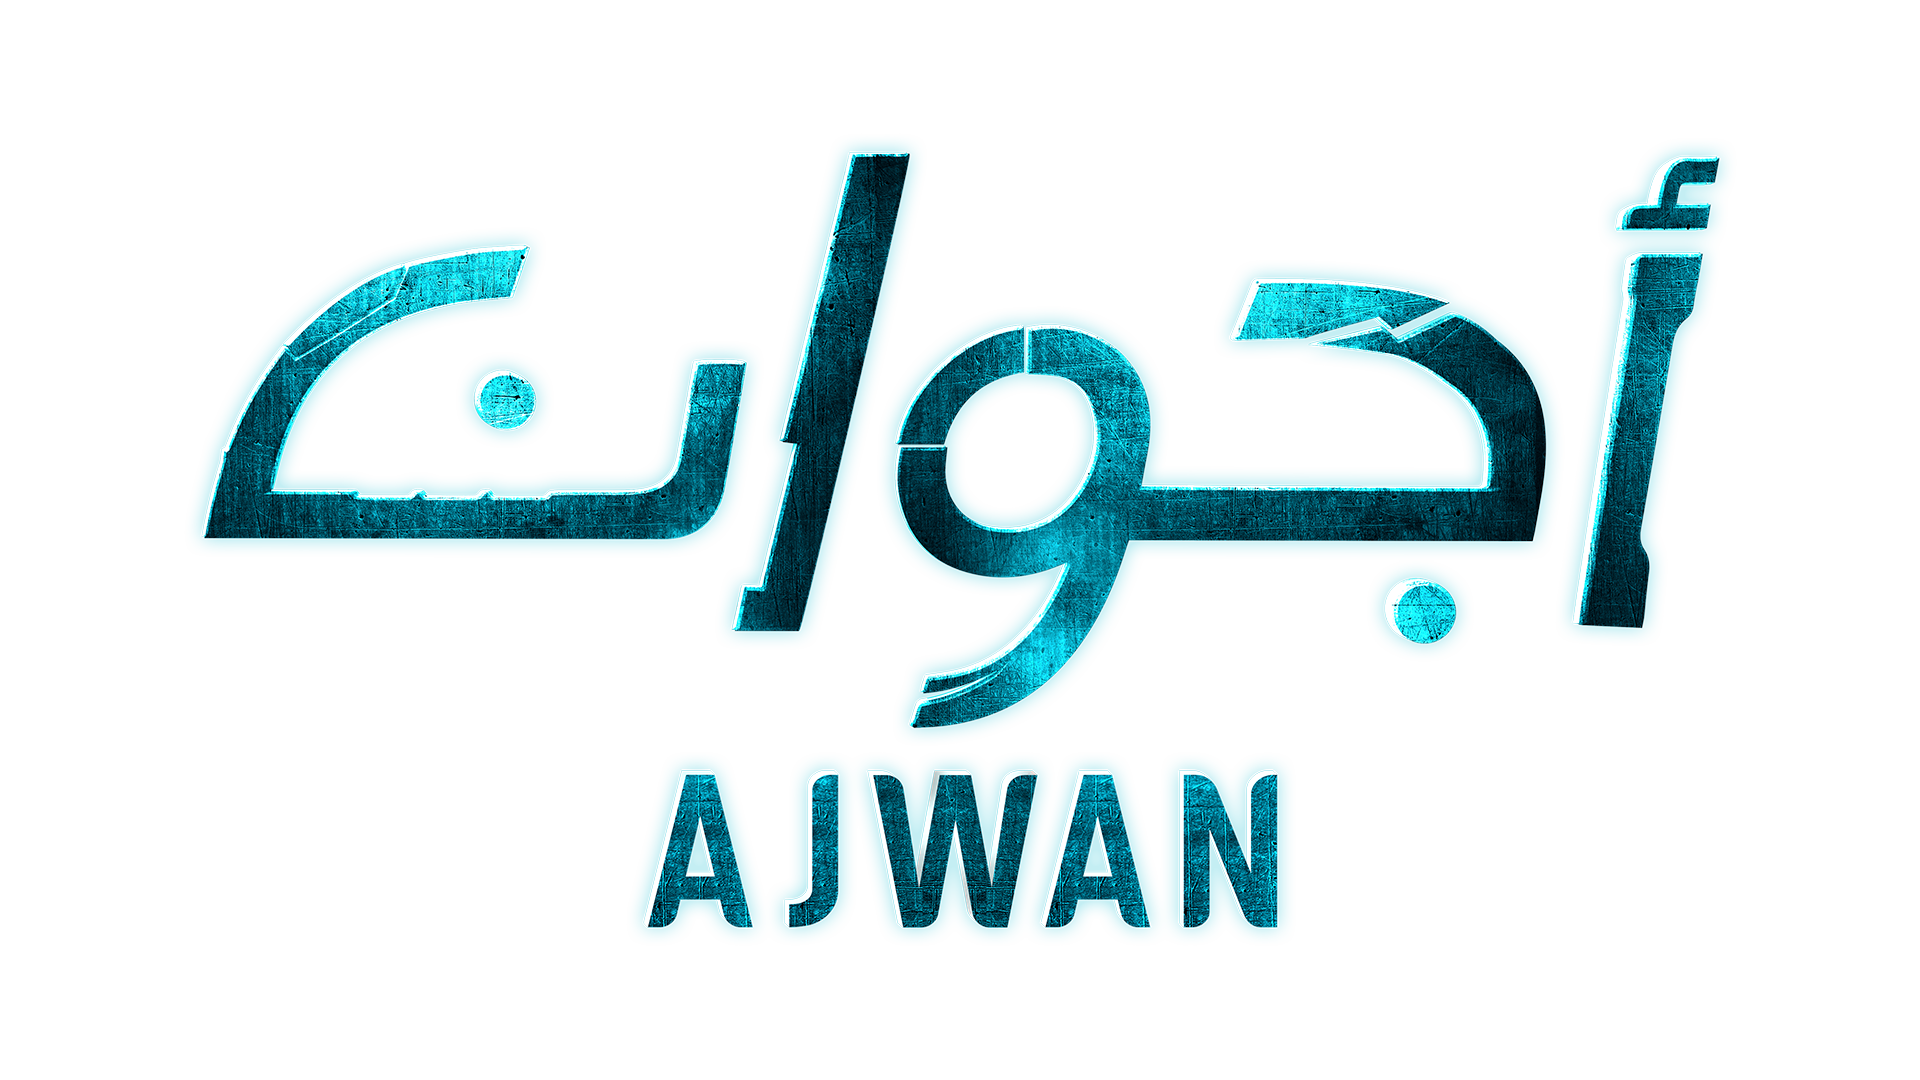 ajwan logo image